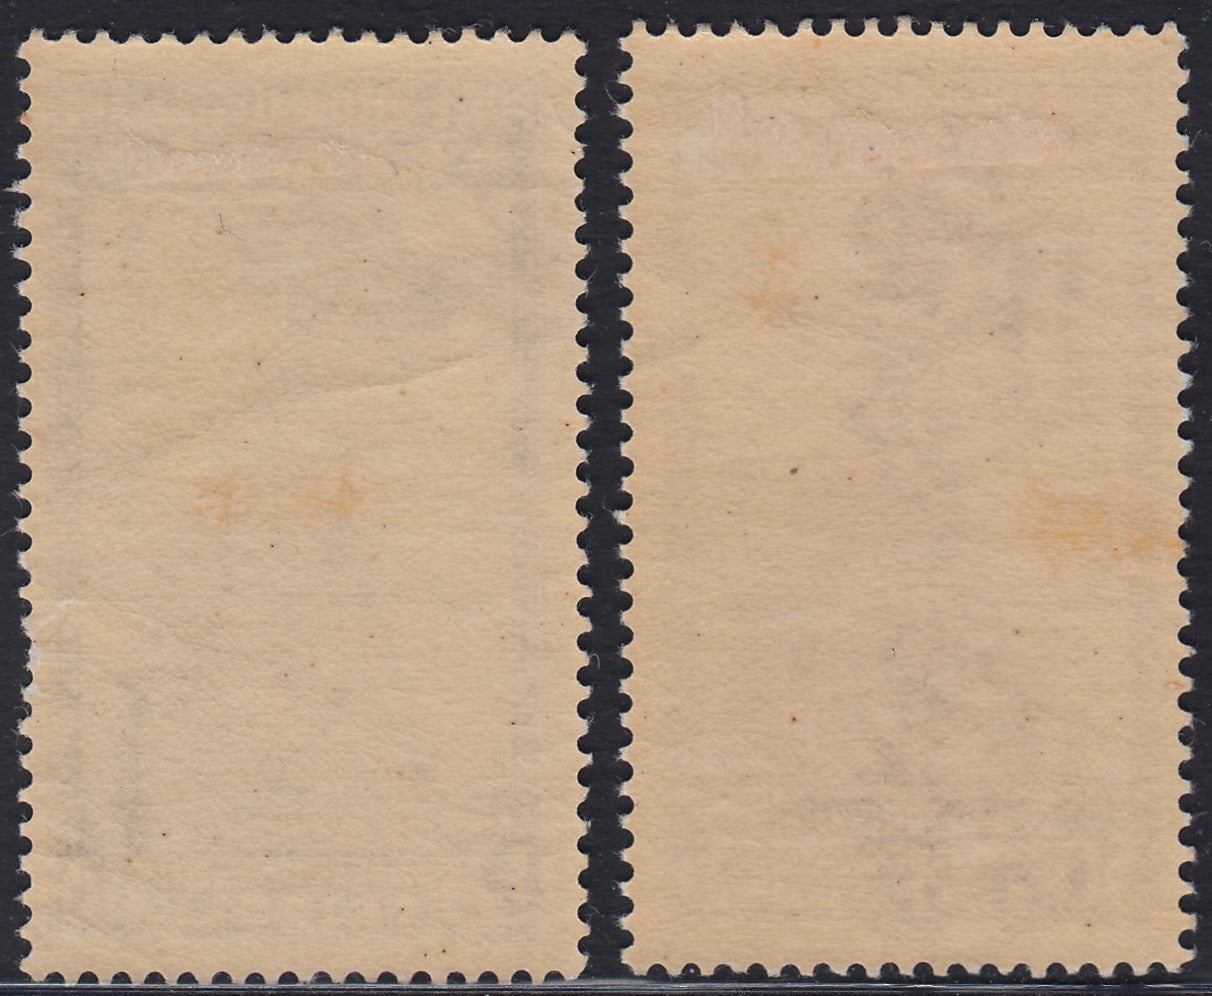 Libia11 - 1936 - Decima fiera di Tripoli, serie completa di 2 valori nuova con gomma originale (138/139)